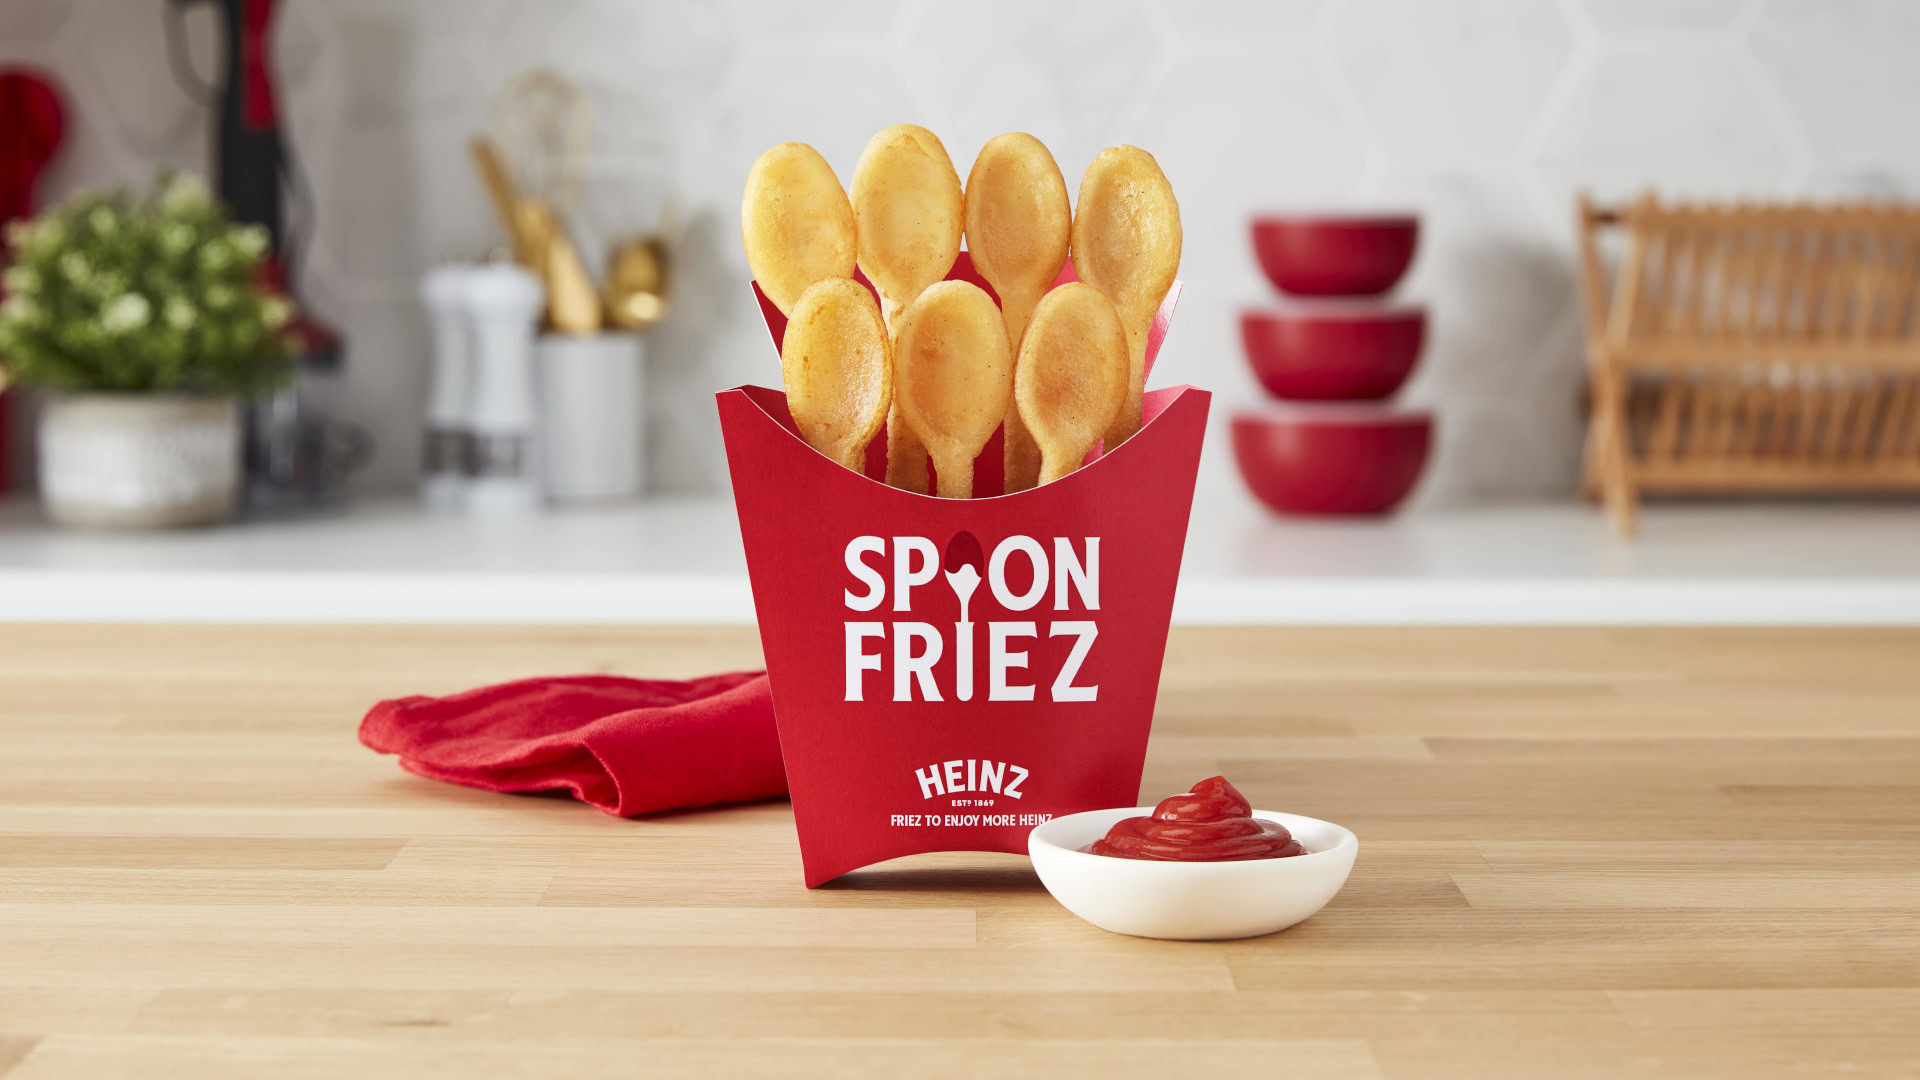 Heinz Spoon Fries resized